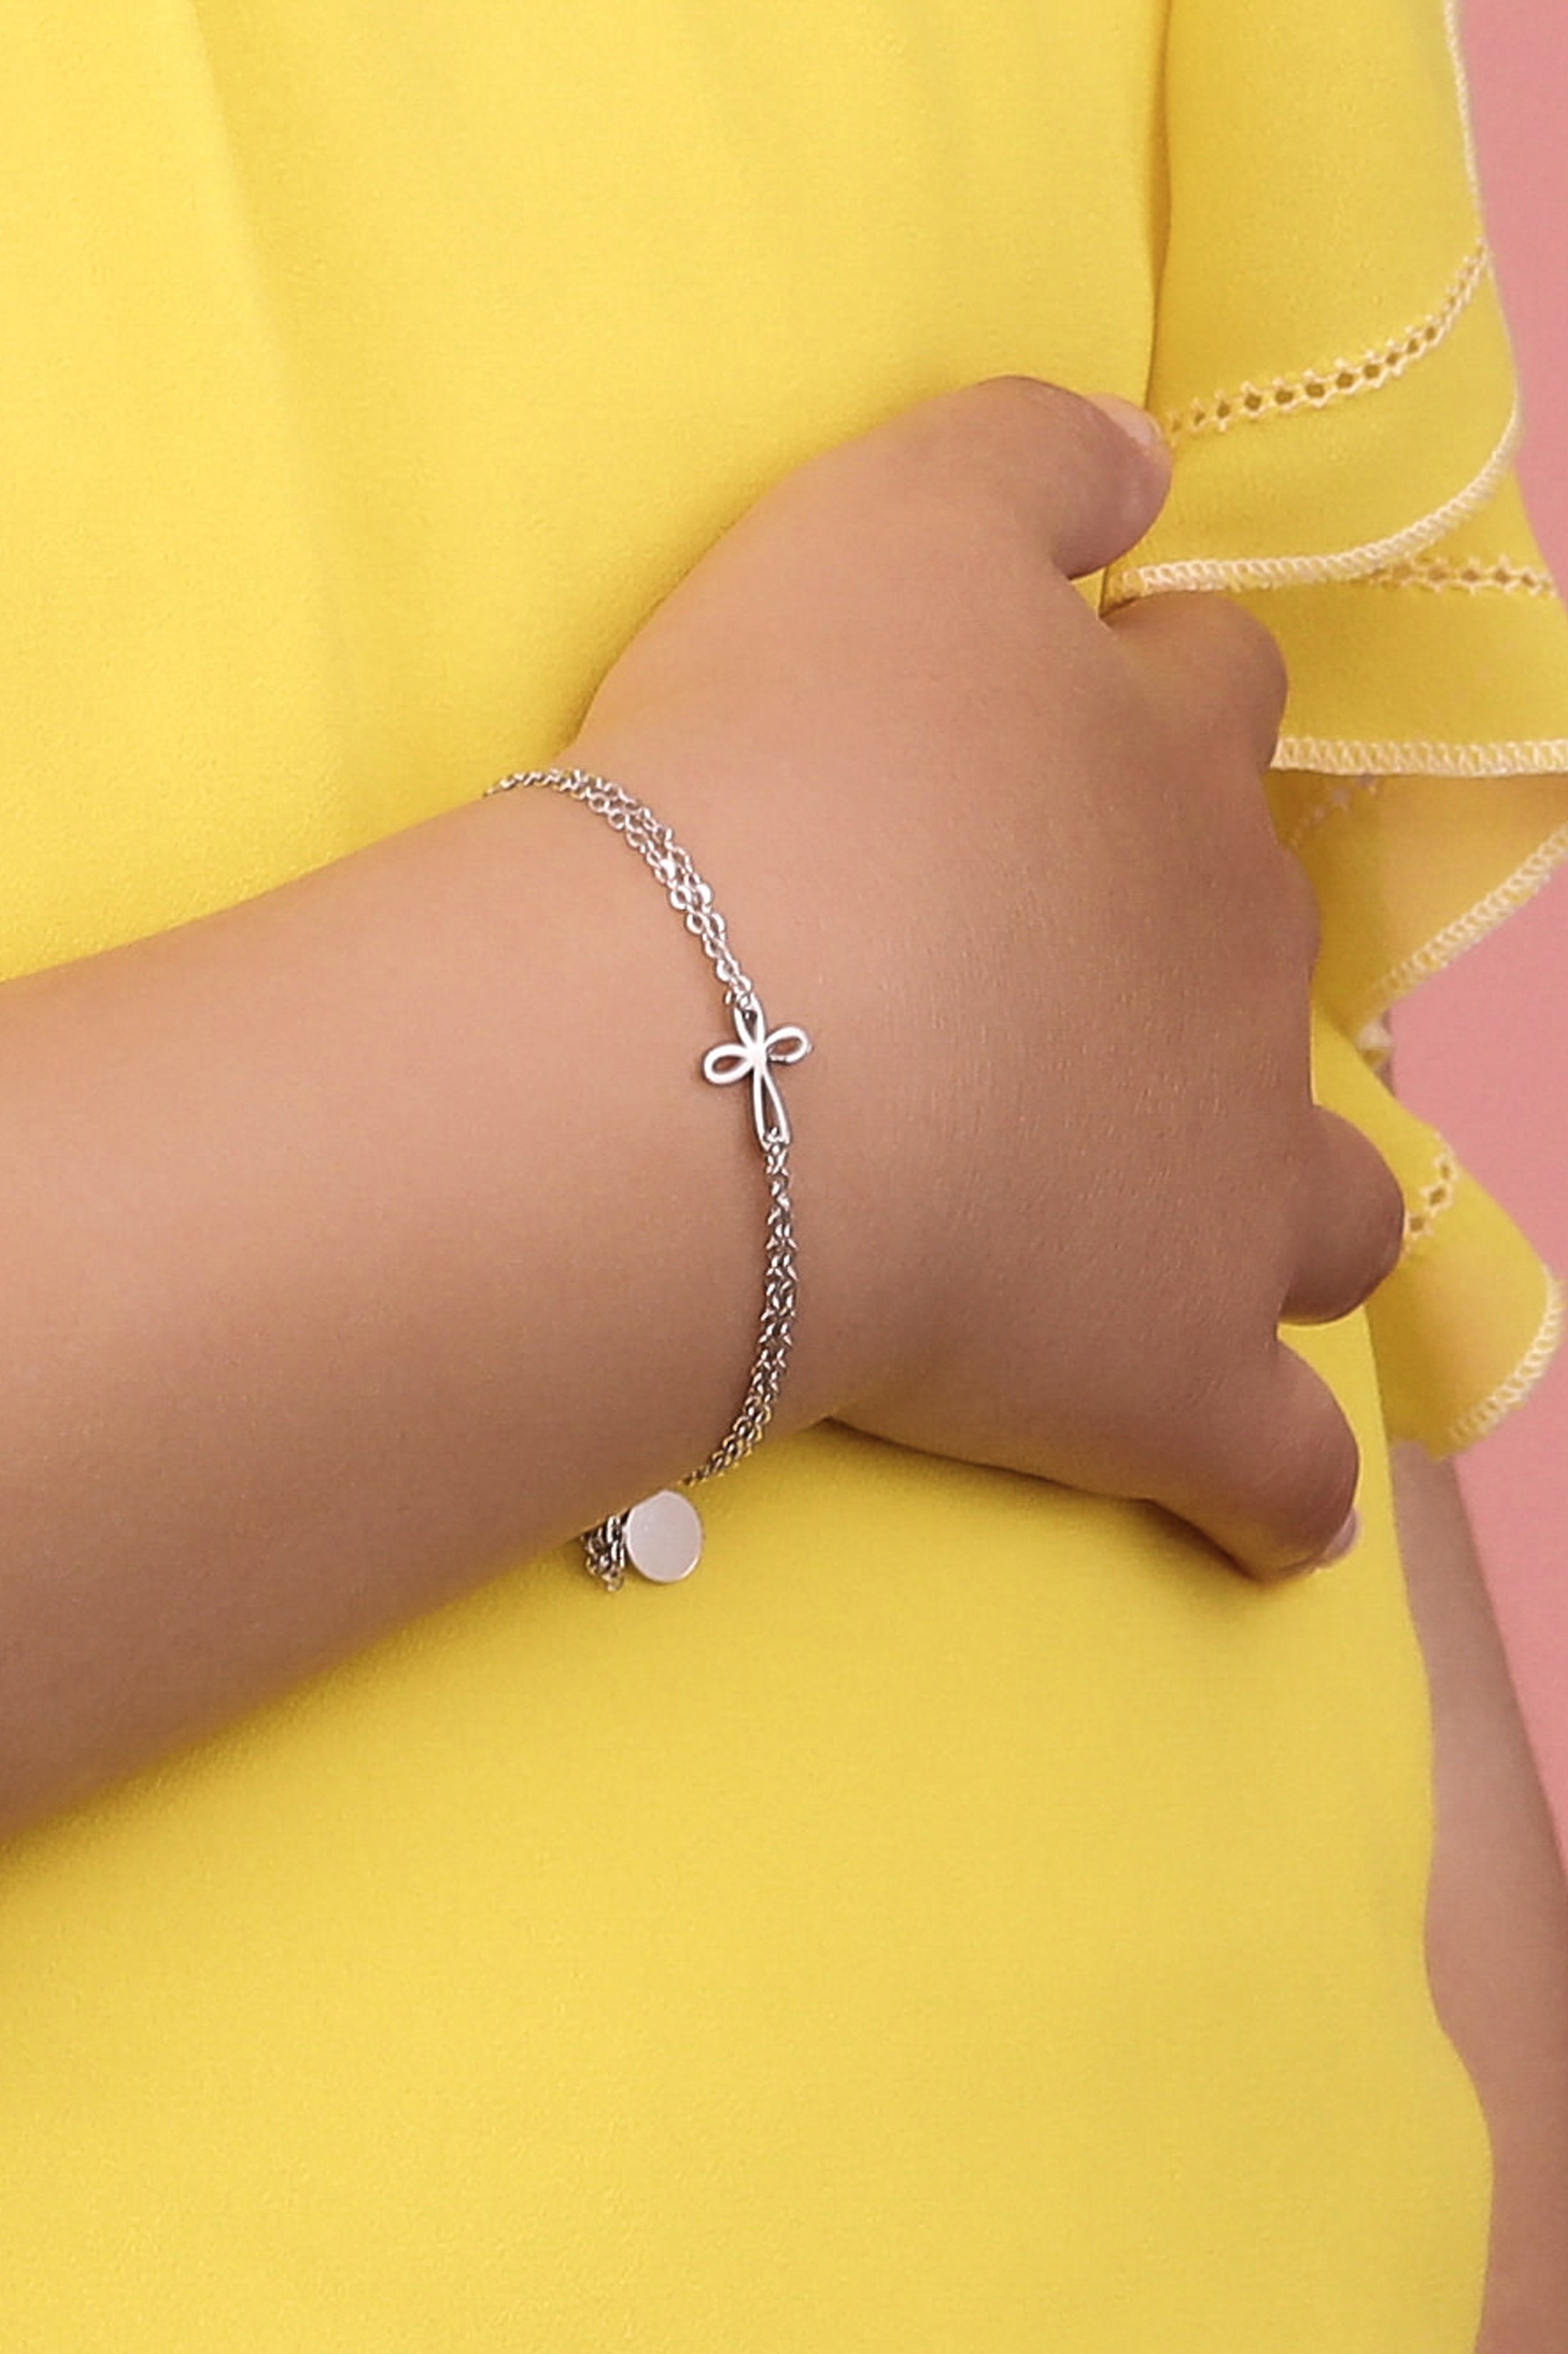 Silver cross bracelet